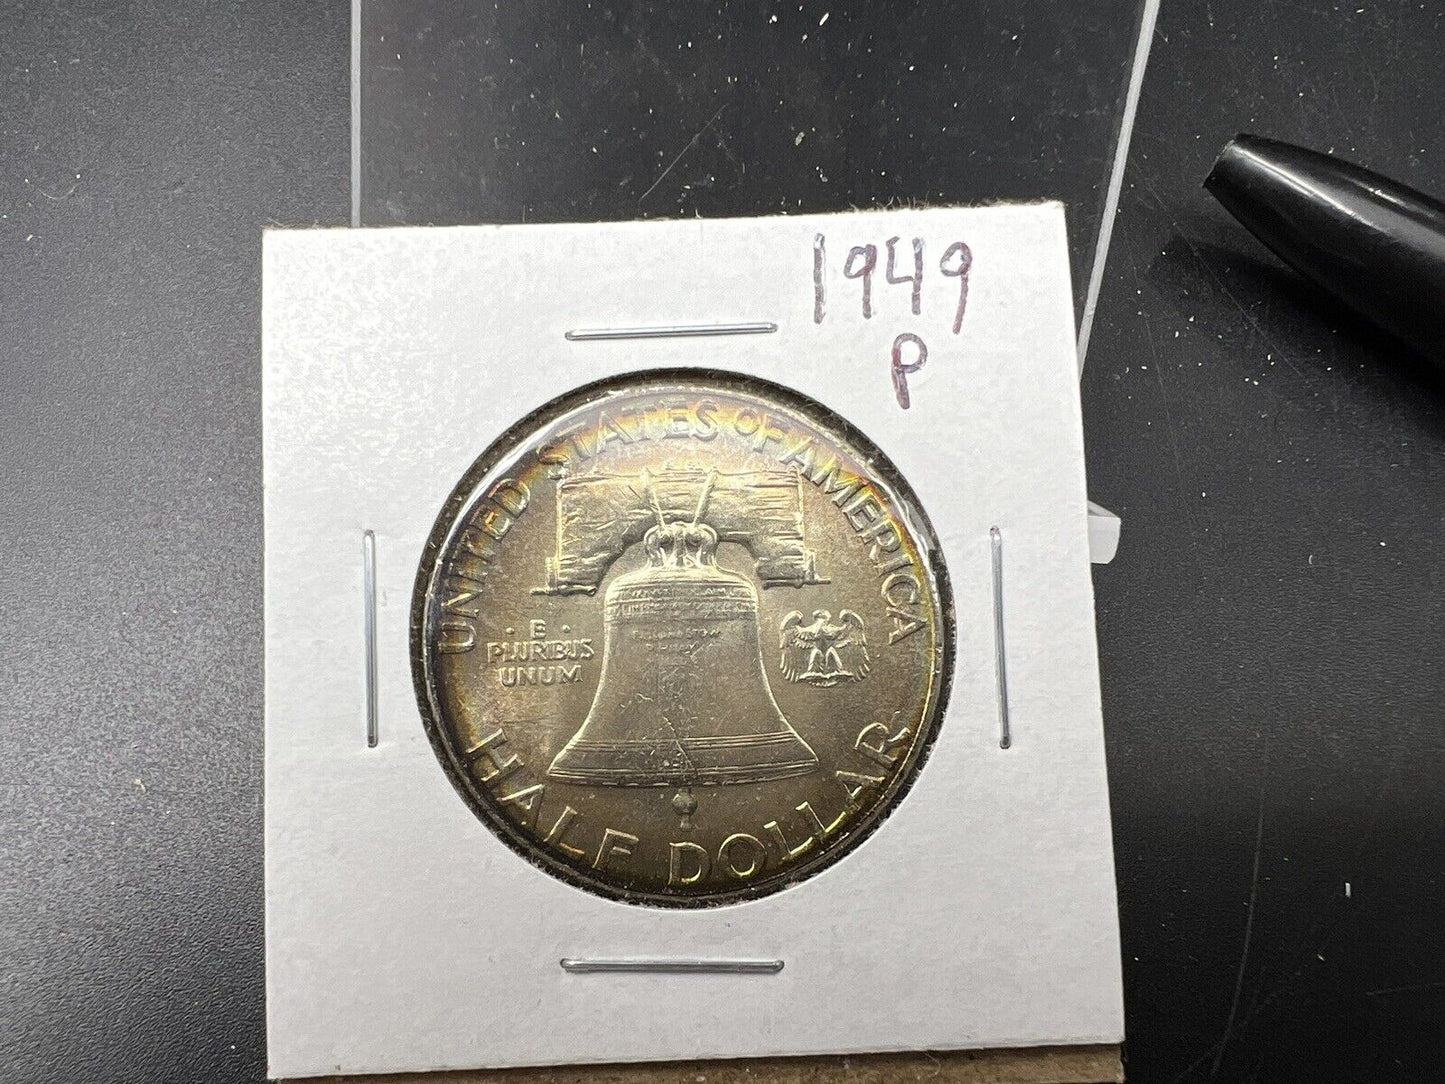 1949 P Franklin Silver Half Dollar Coin BU UNC FBL Full Bell Line PQ Toning REV